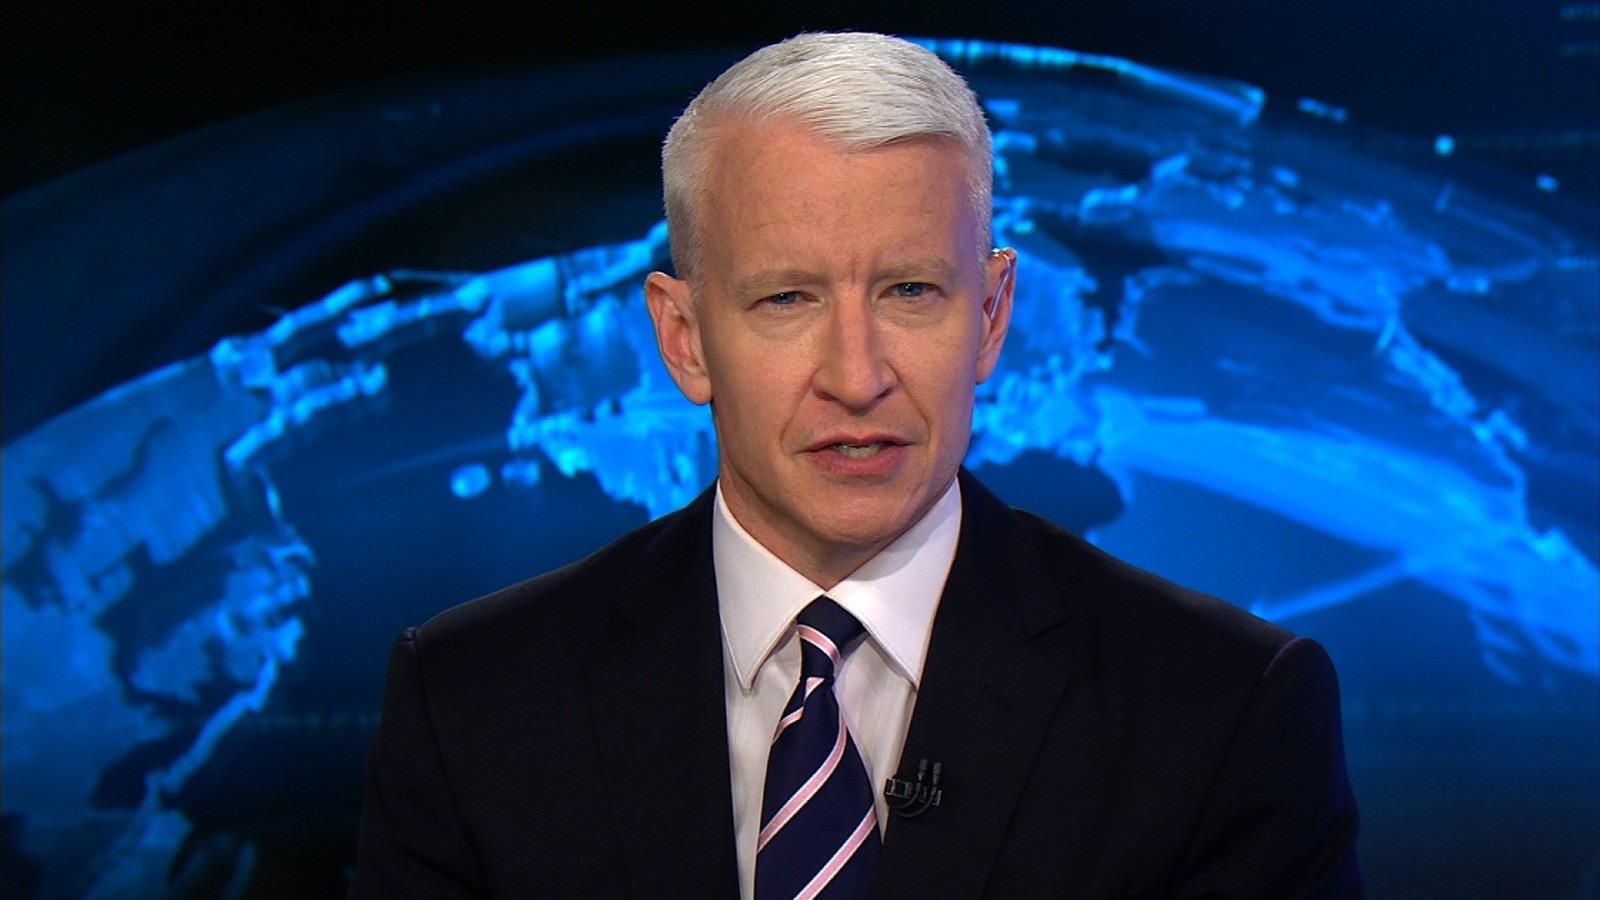 Anderson Cooper là một nhà báo người Mỹ, tác giả, và nhân vật truyền hình nổi tiếng. Tính đến năm 2010, ông là người đứng đầu trong một show tin tức truyền hình của CNN “360 ° Anderson Cooper”. Anderson Cooper Hays Vanderbilt sinh ngày 3 tháng 6 năm 1967. 